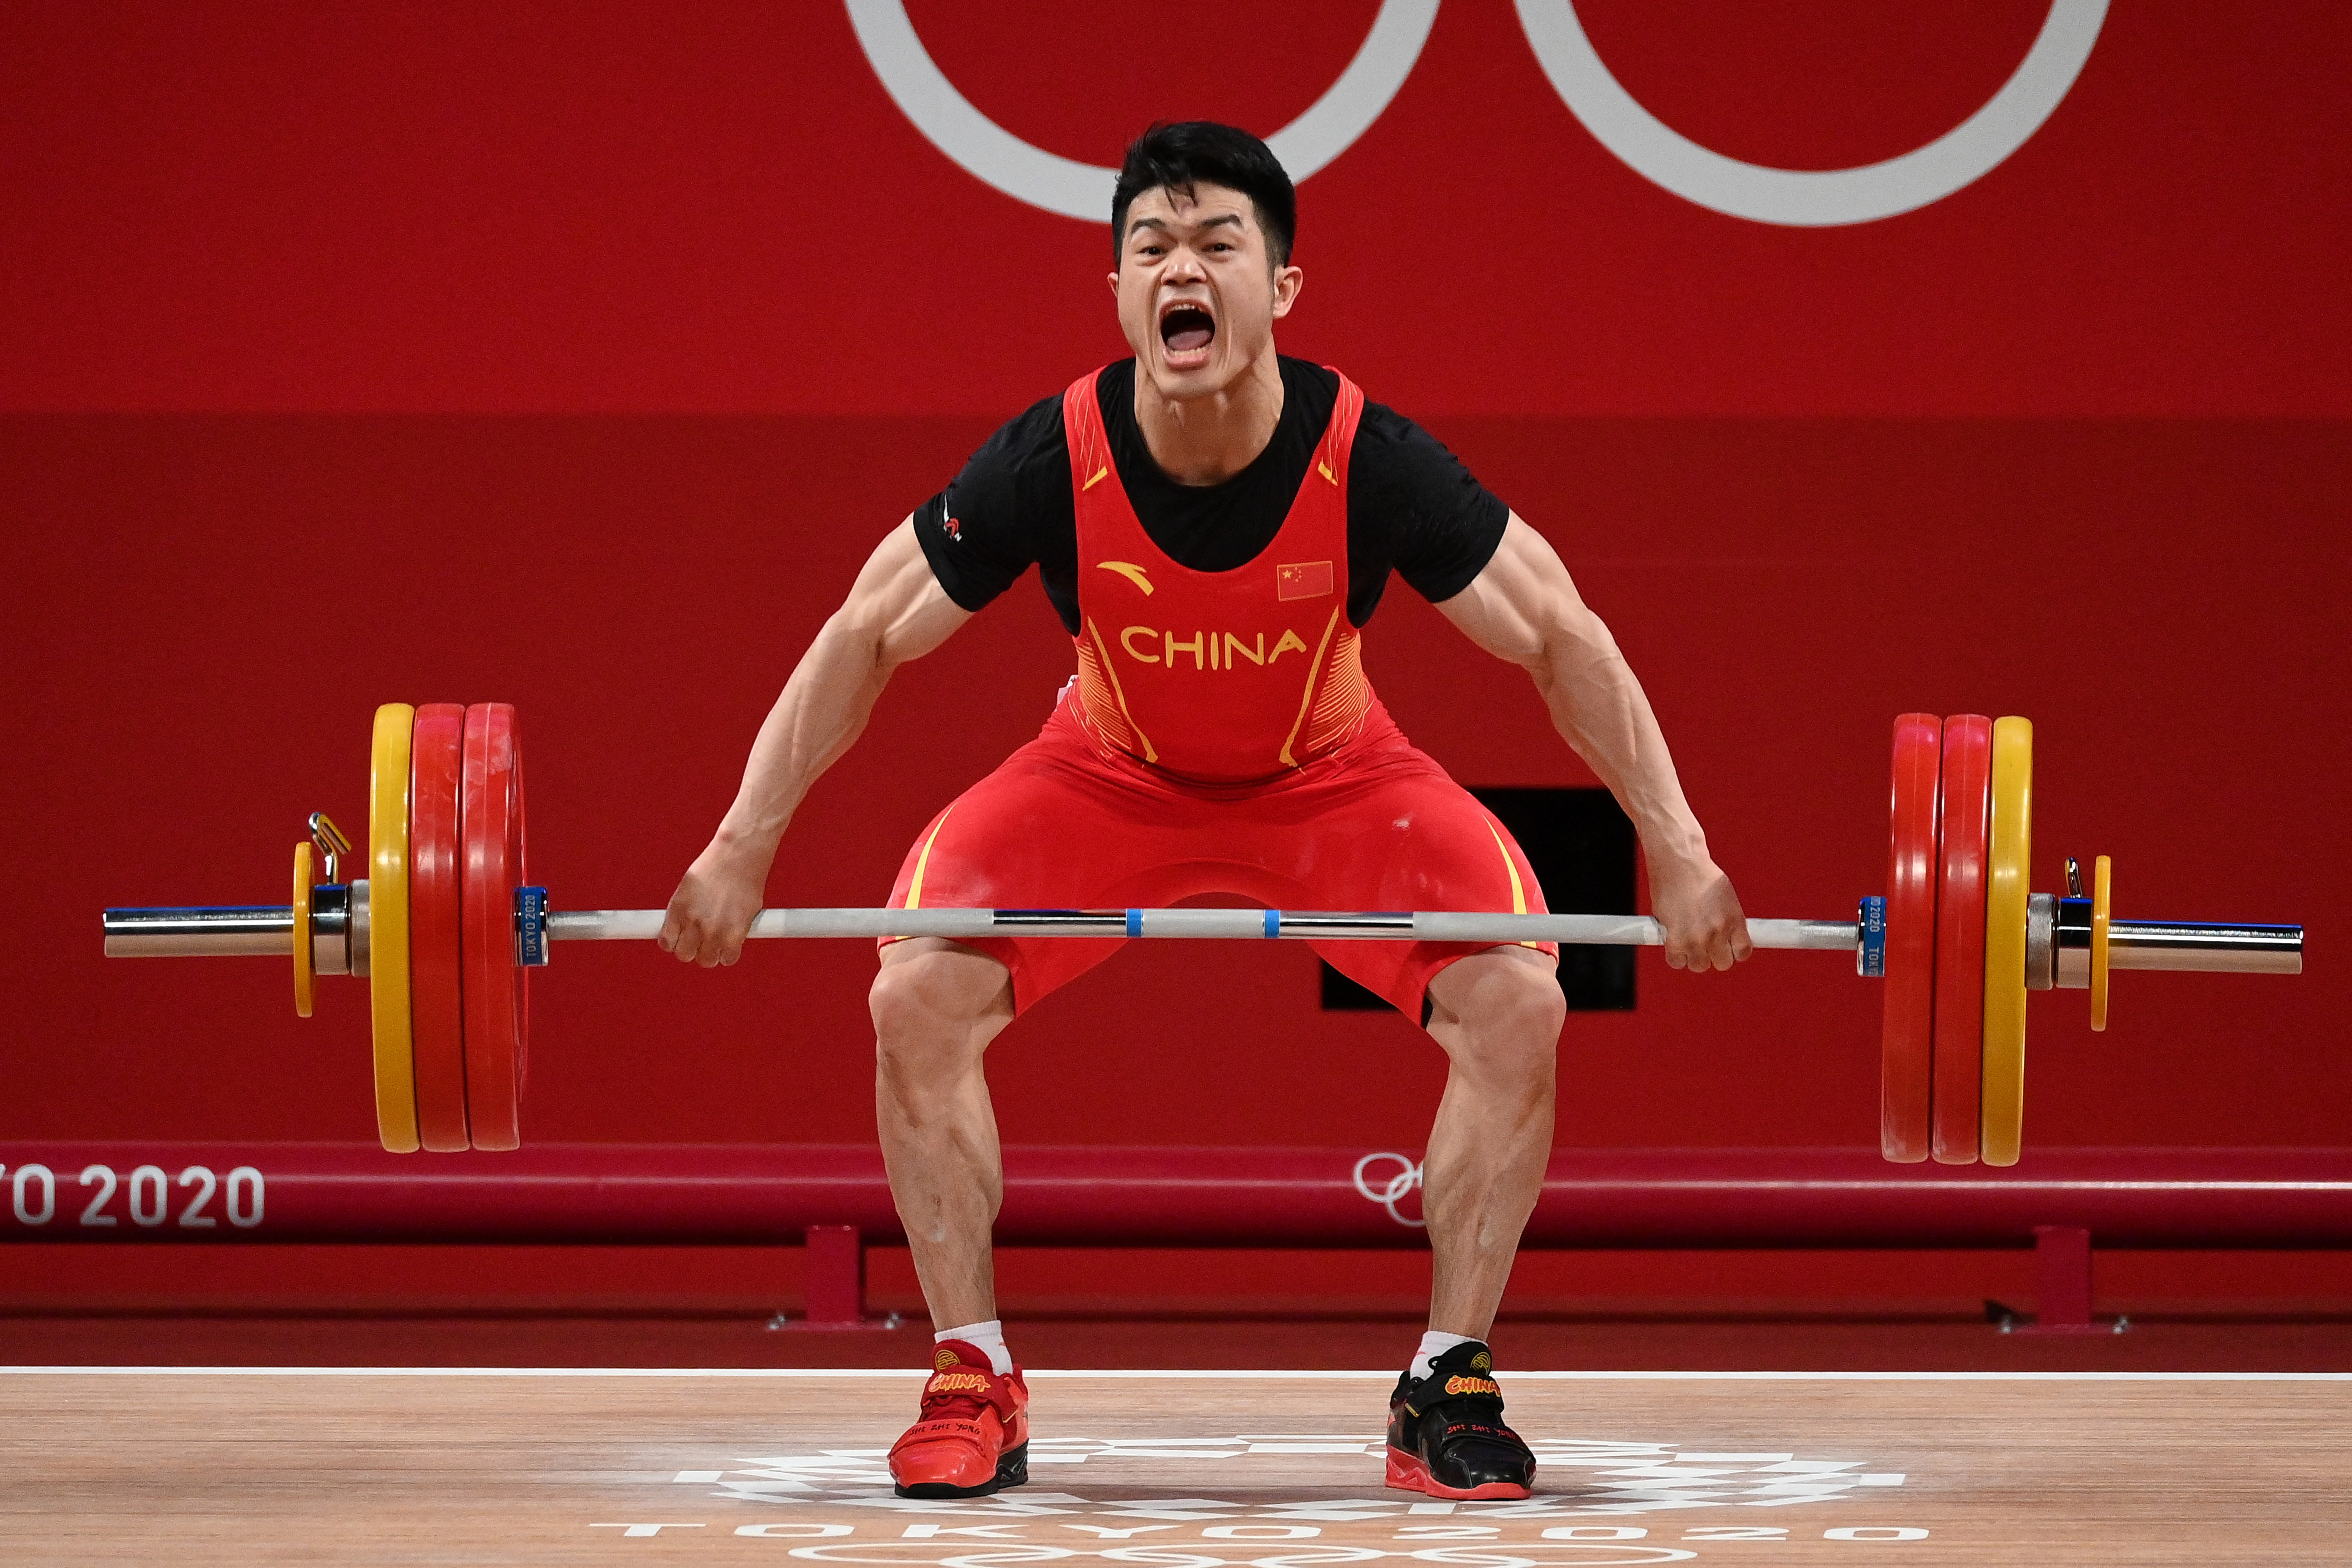 A férfiak 73 kilogrammos súlycsoportjában világcsúccsal aranyérmes kínai Si Cse-jung a 3D-nyomtatással készült cipőkban és mezben július 28-án a tokiói olimpián